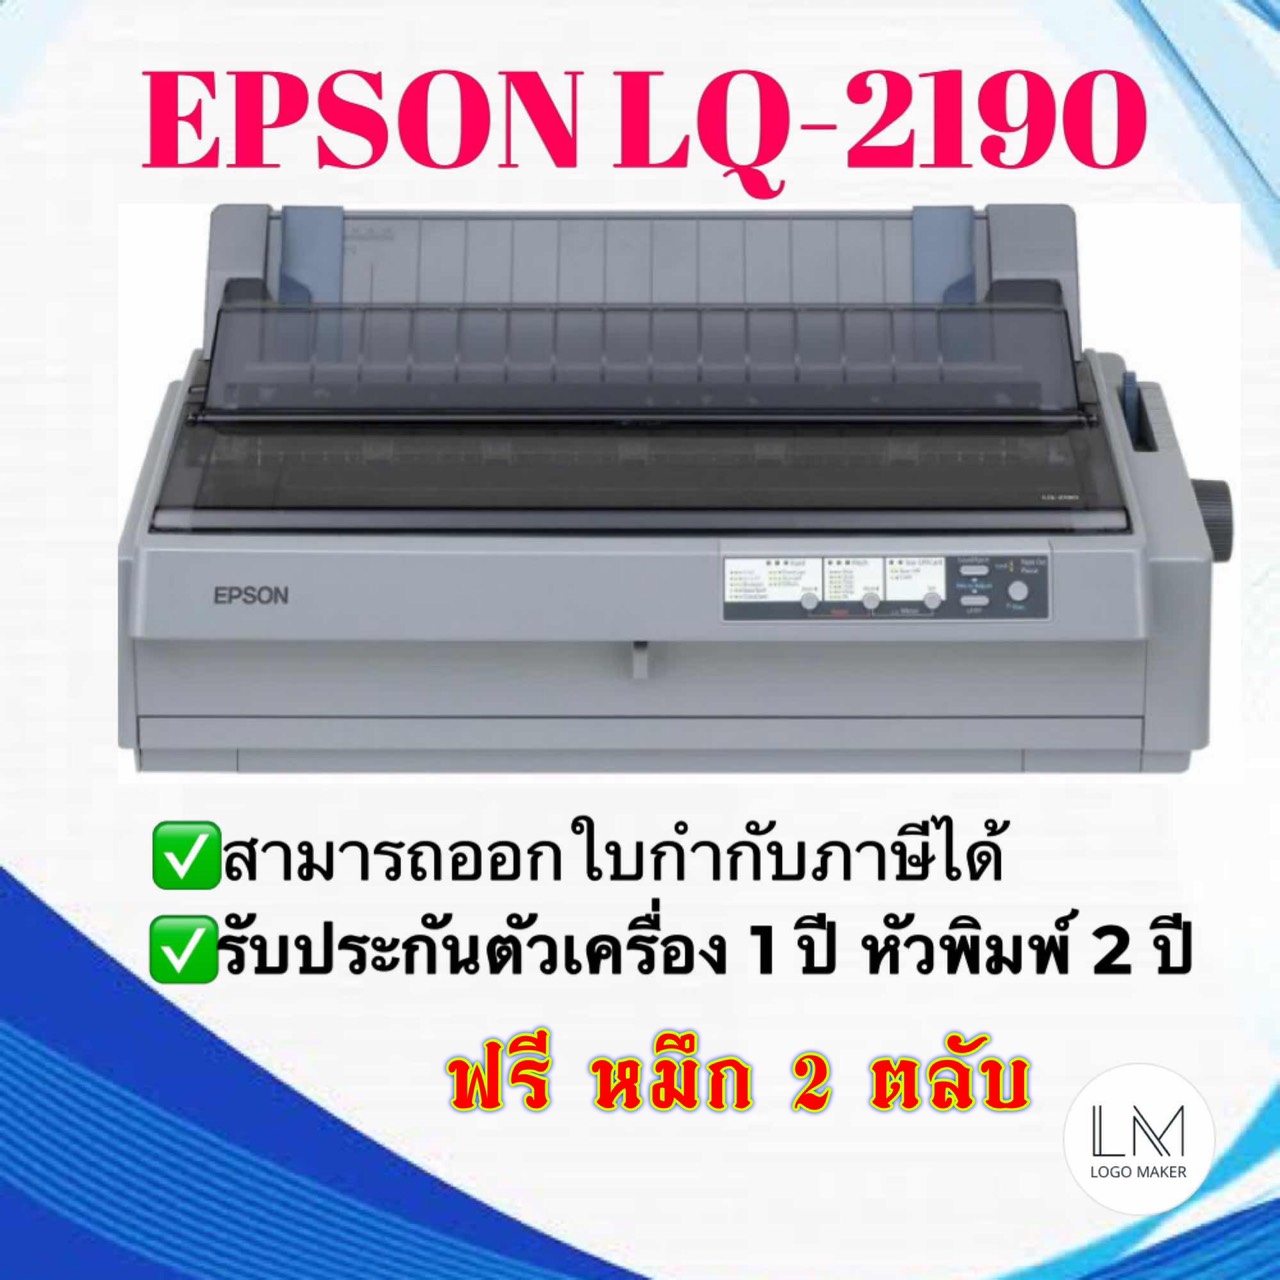 EPSON Dot Matrix Printer LQ-2190